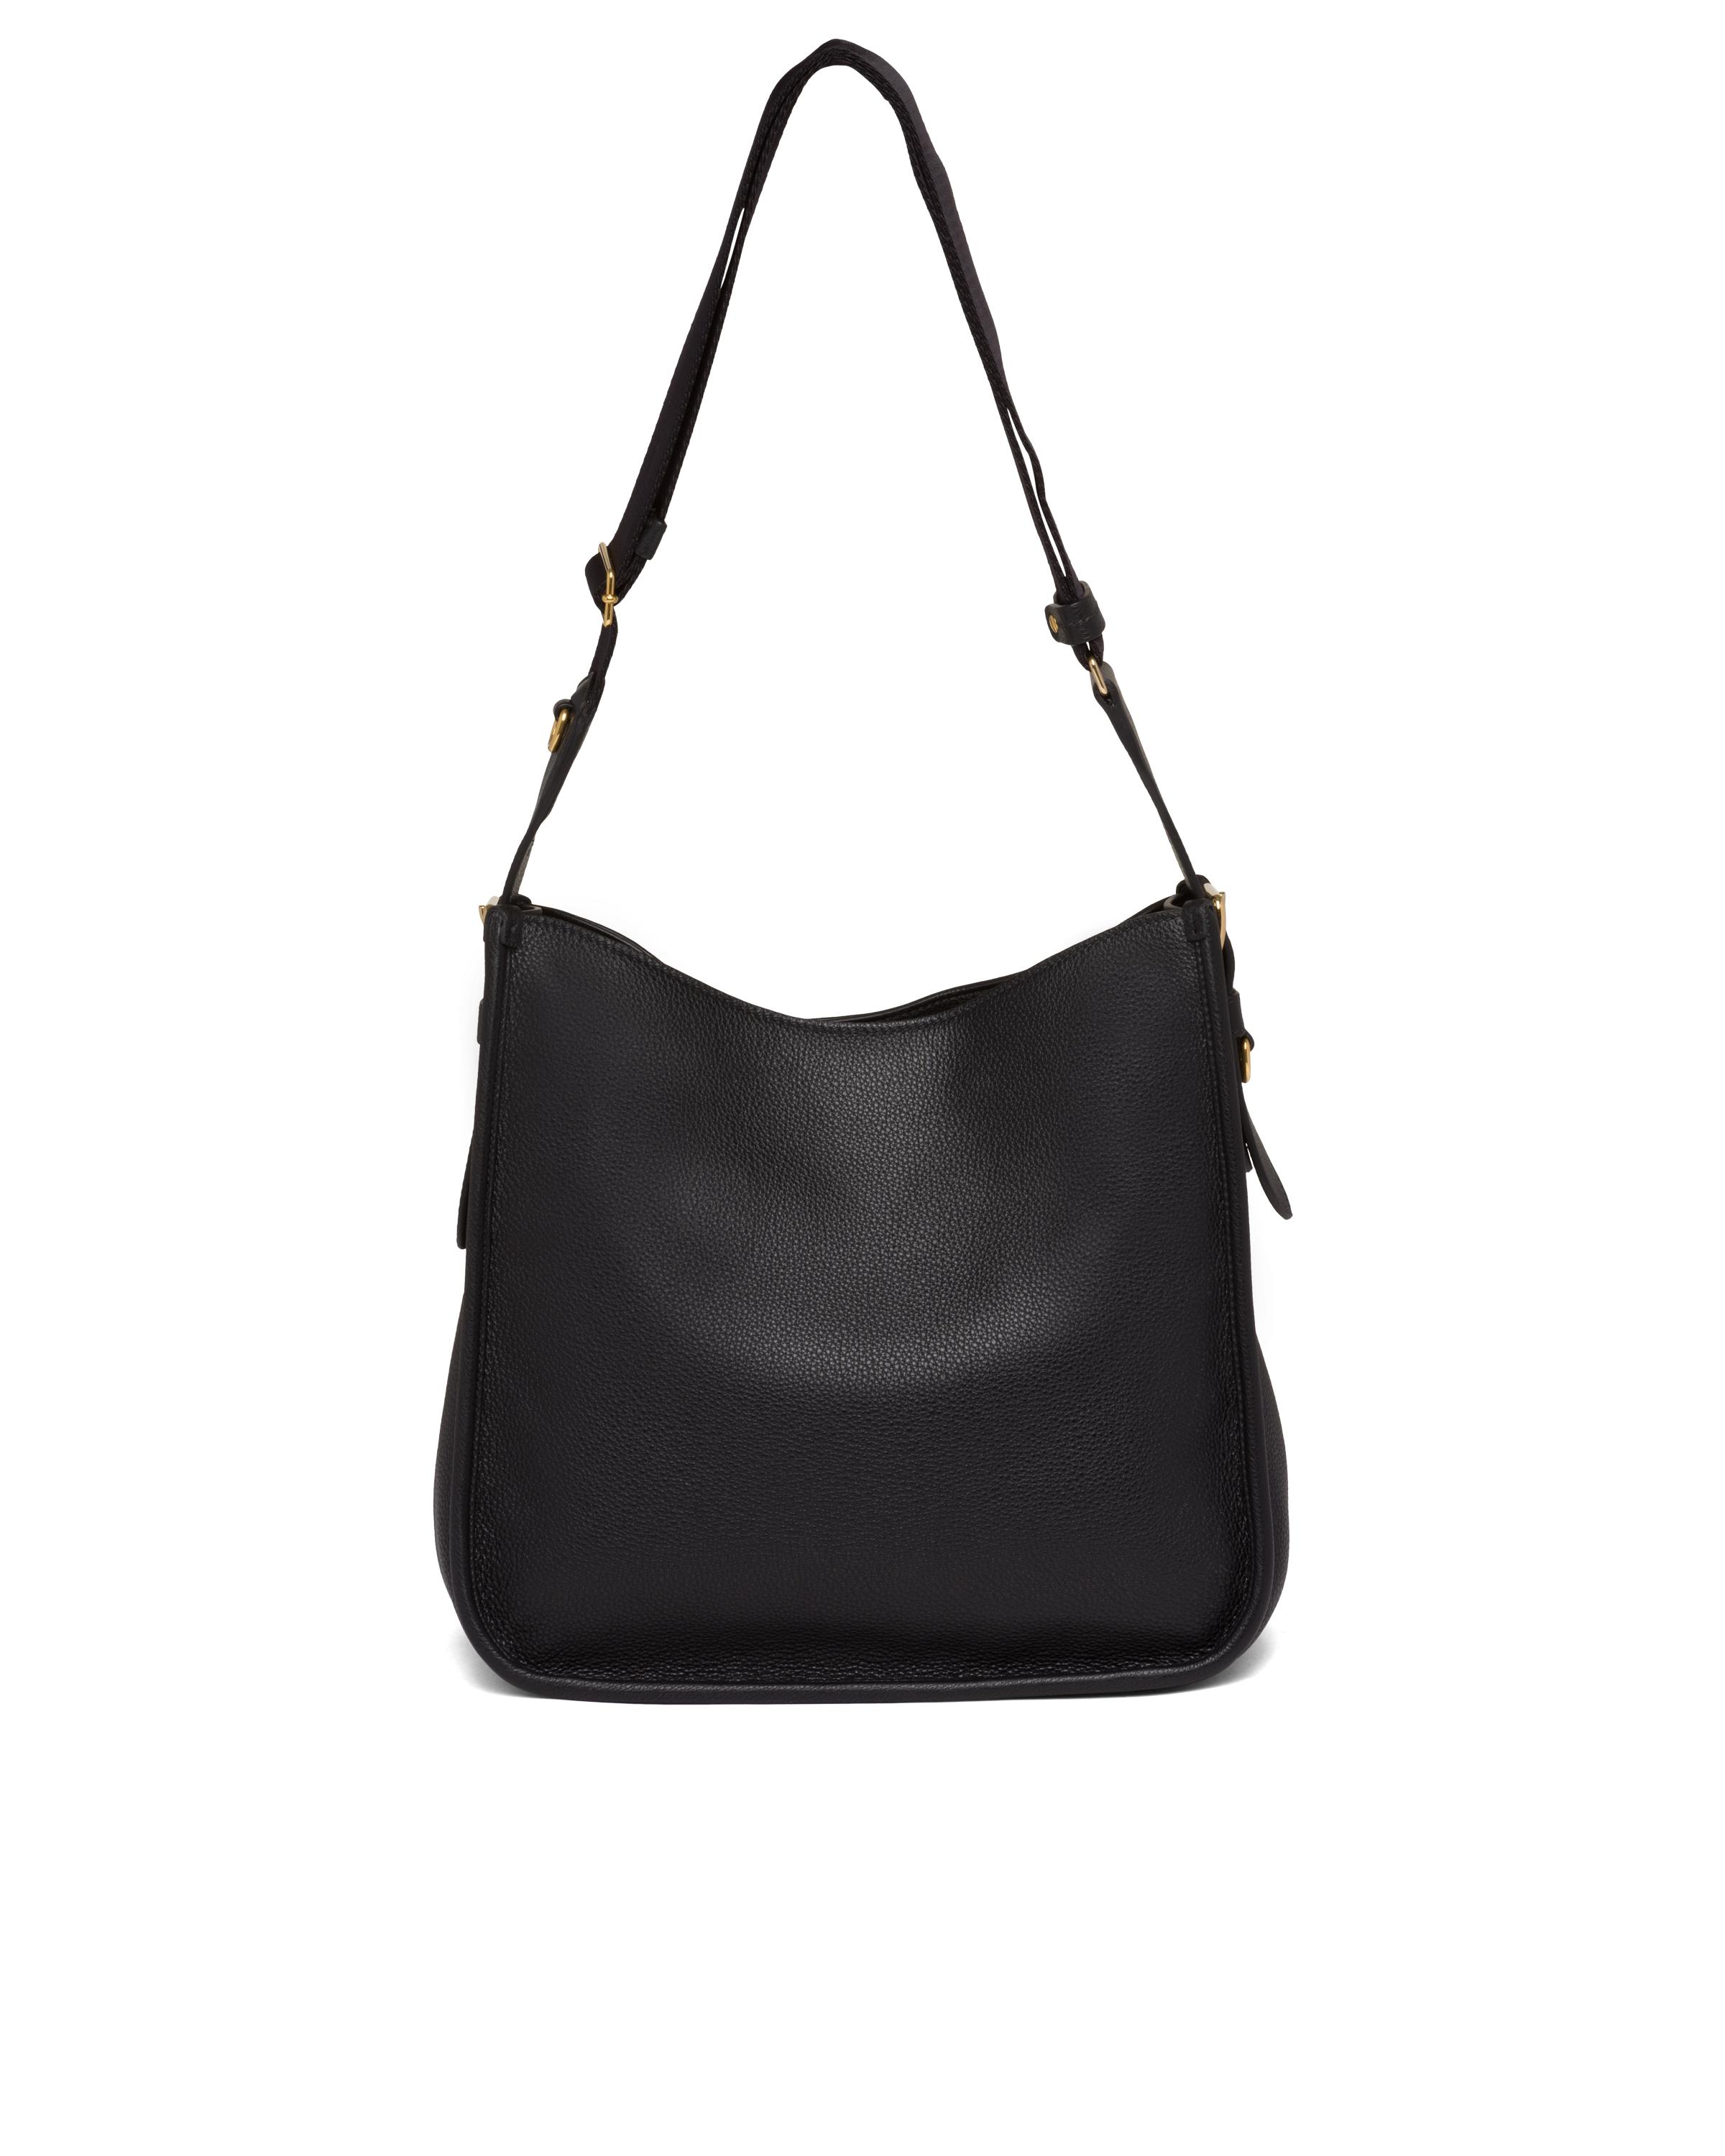 Prada Black Leather Hobo Bag | semashow.com